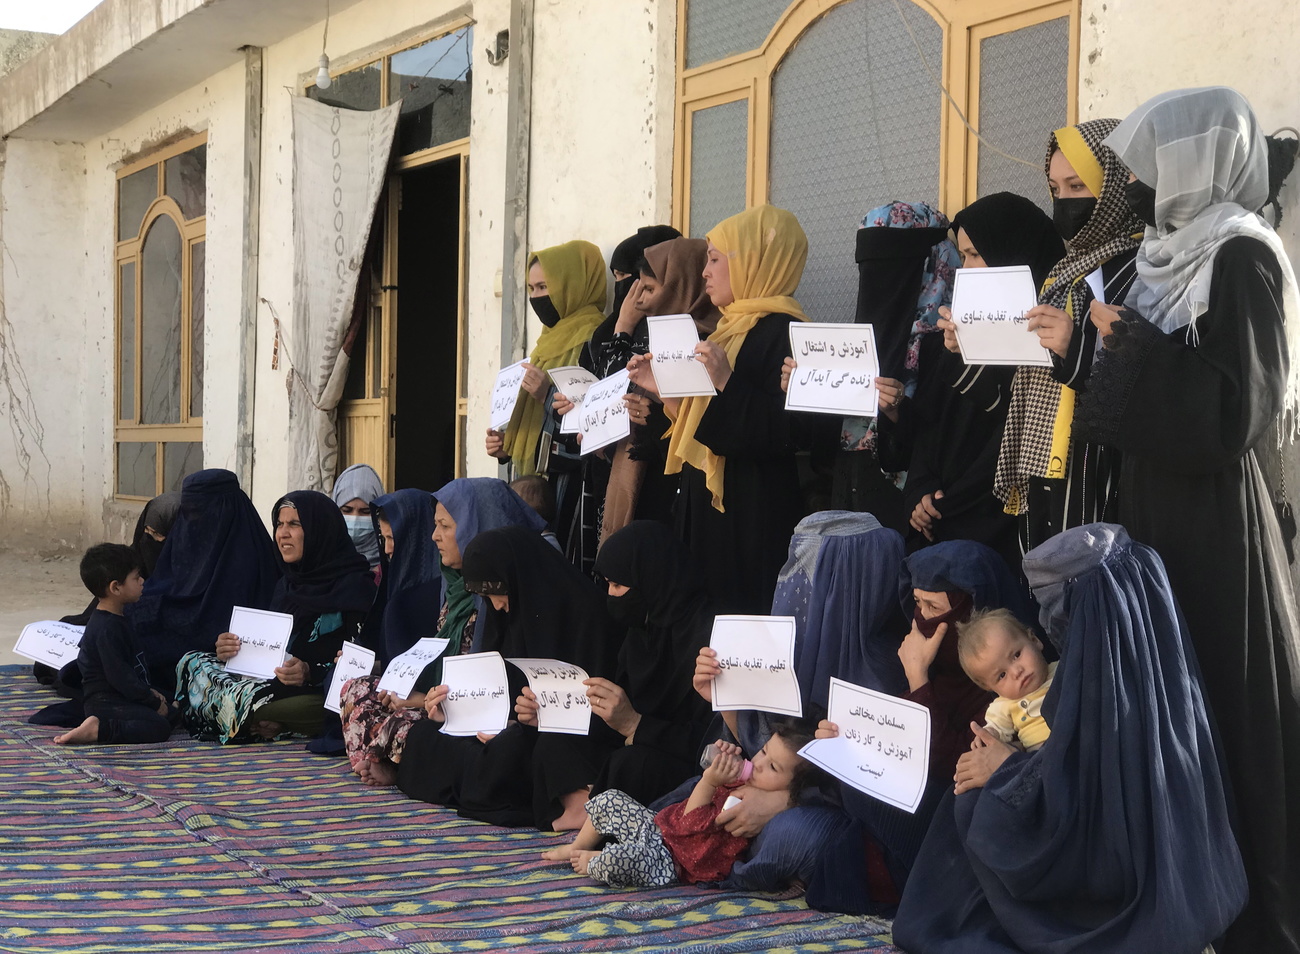 Verhüllte Frauen protestieren in Afghanistan